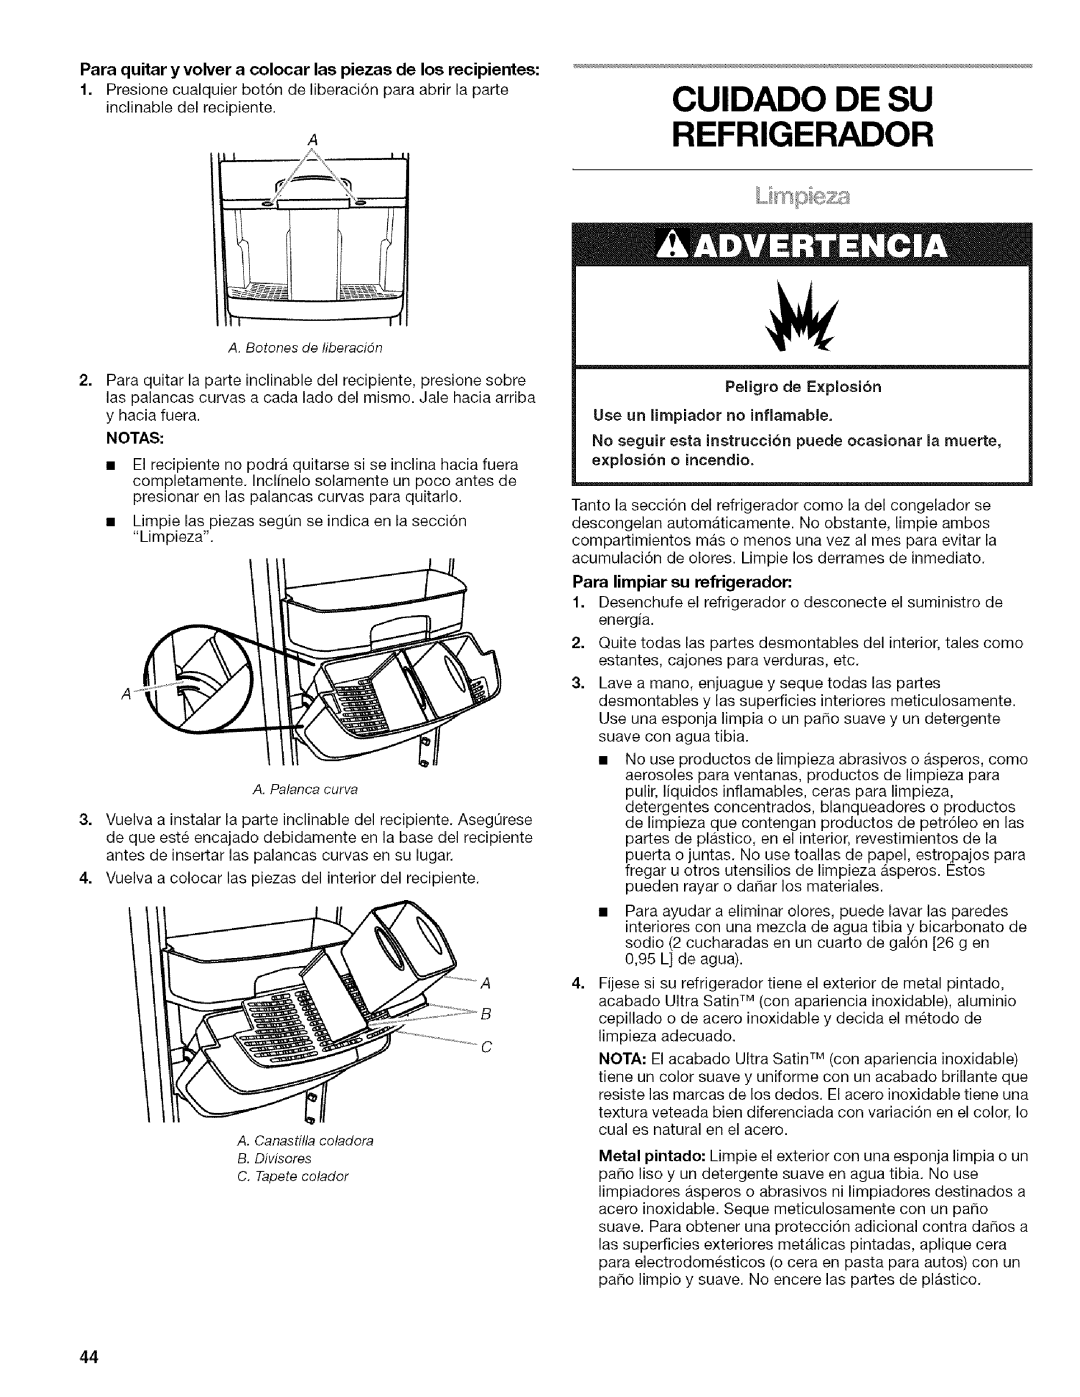 Kenmore WI0151336A manual CUlDADO DE SU REFRIGERADOR, Notas, Peligro de E×plosion, Use un limpiador no inflamable 